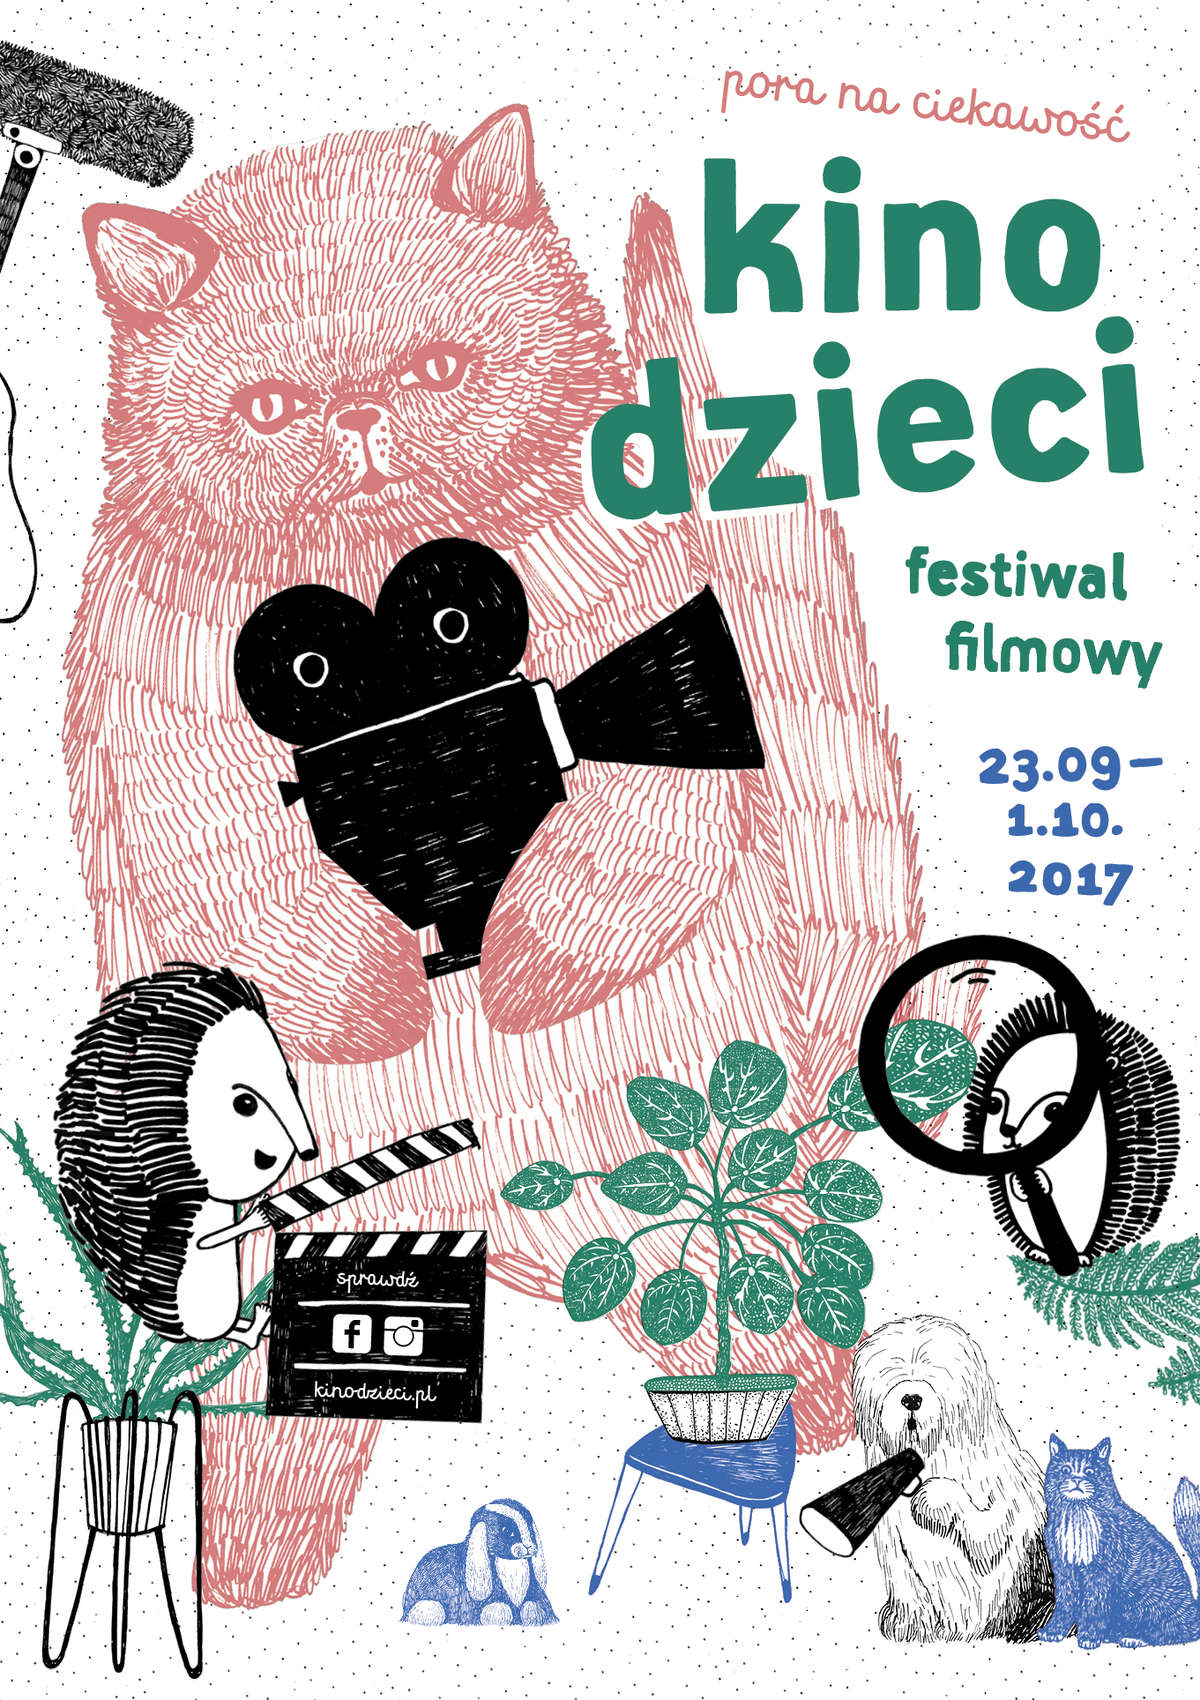 Zostań jurorem! Awangarda zaprasza na festiwal Kino Dzieci w Olsztynie - full image